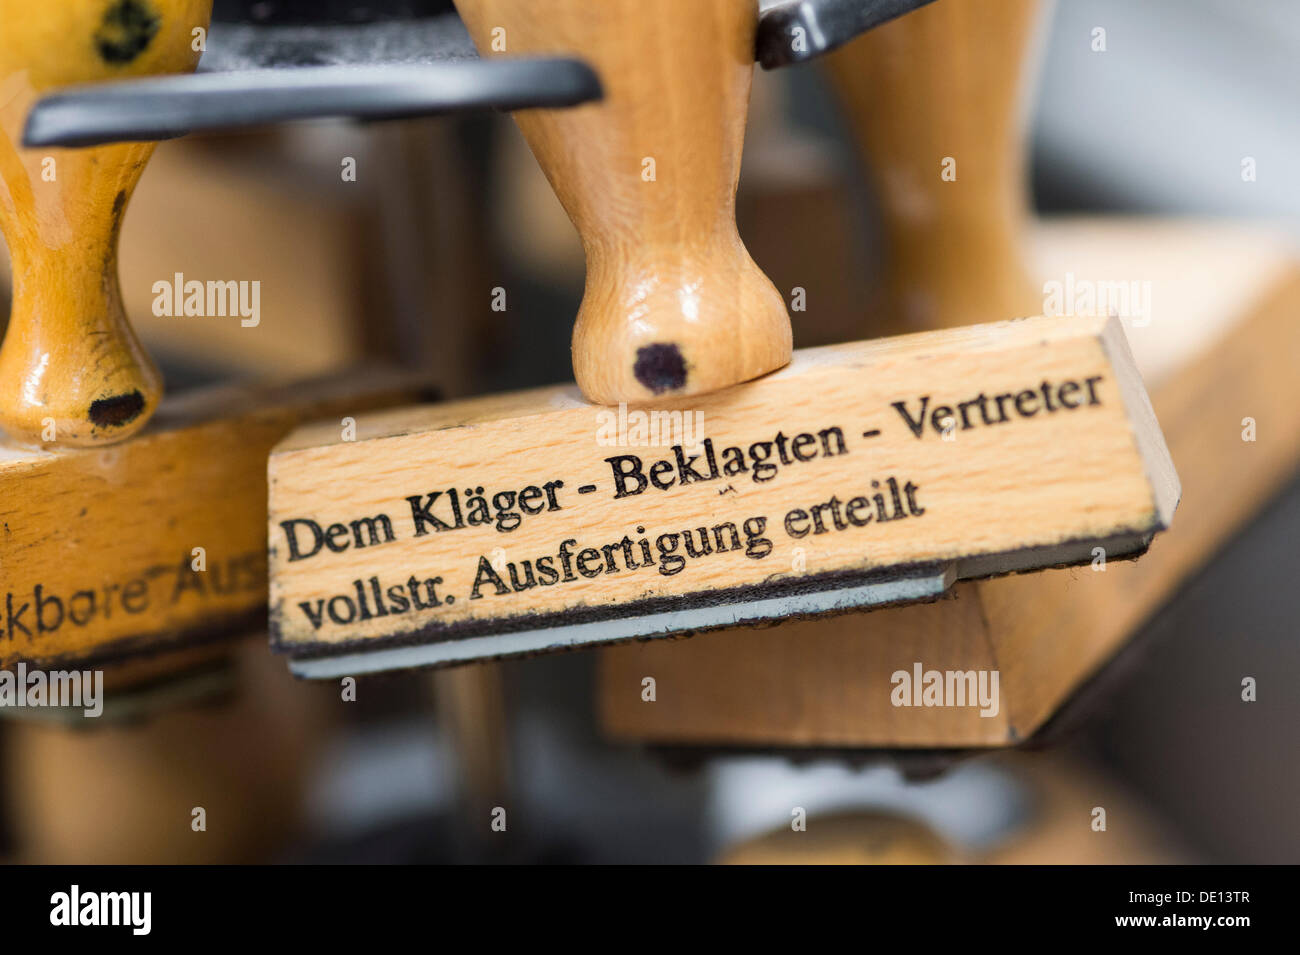 Stamp with the inscription 'Dem Kläger - Beklagten - Vertreter - vollstr. Ausfertigung erteilt', German for 'The plaintiff - Stock Photo